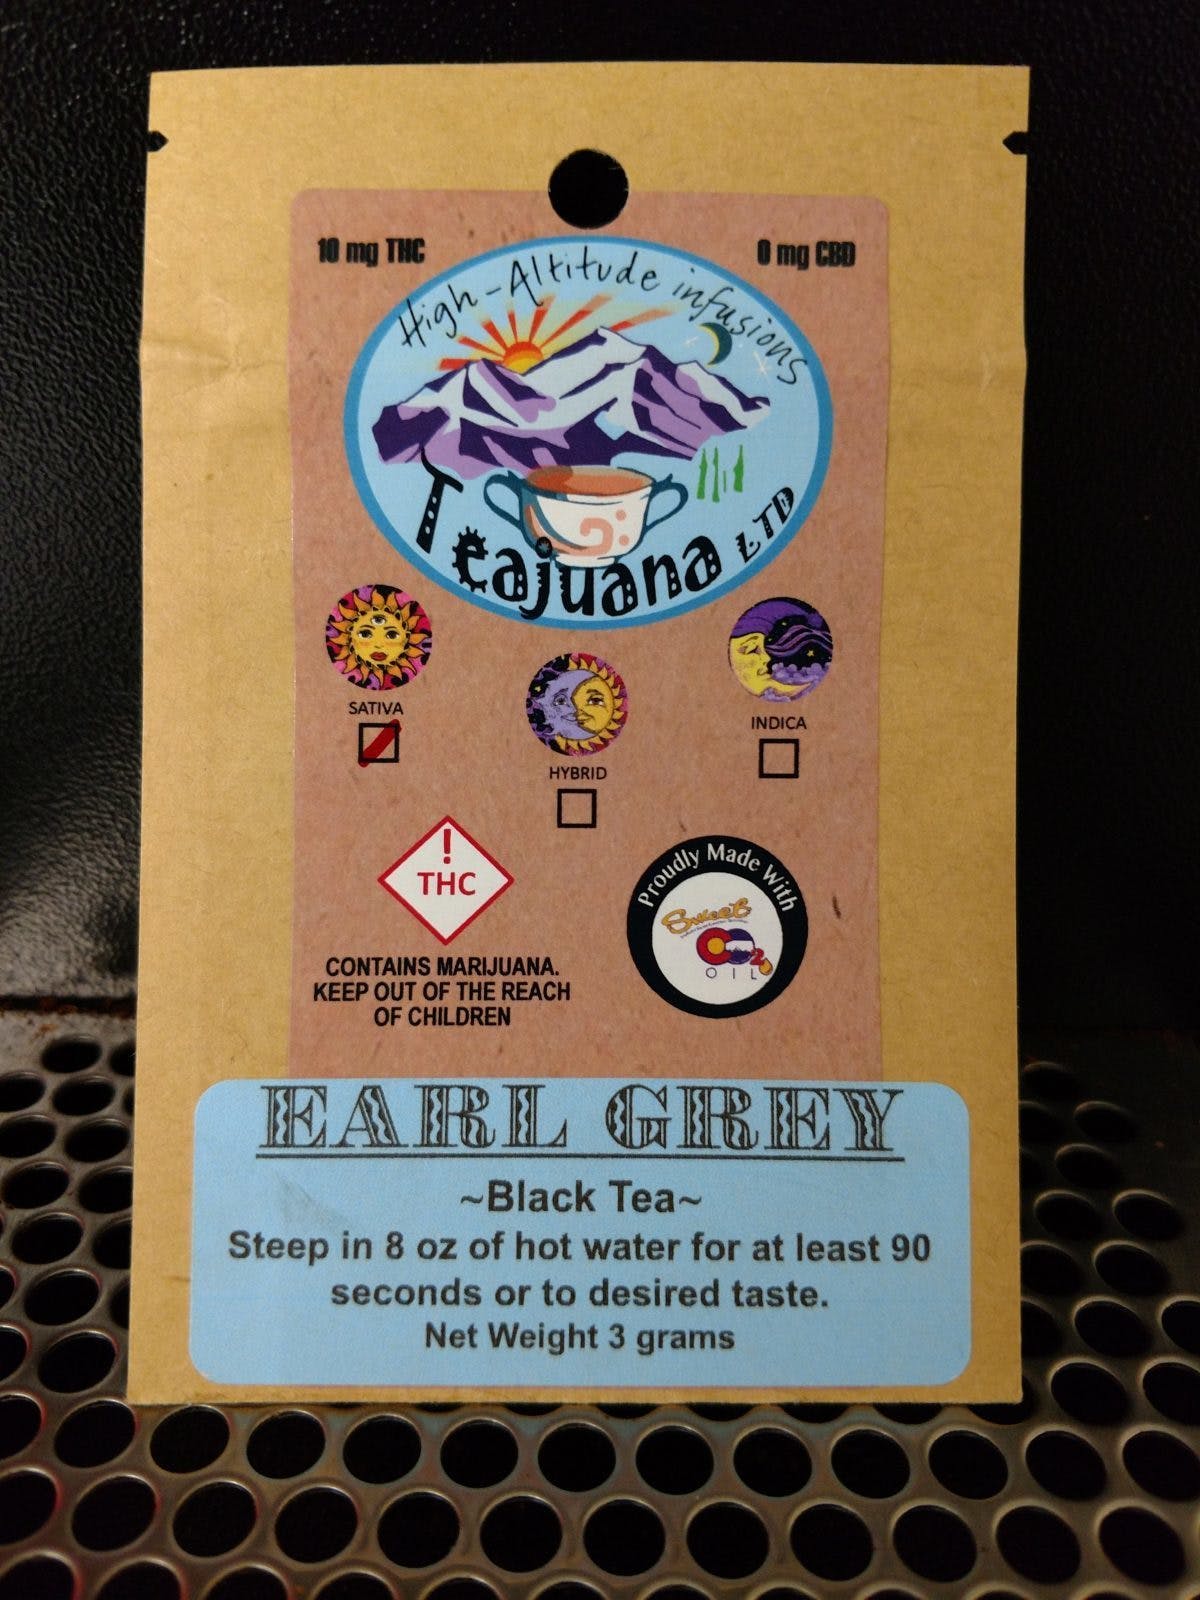 edible-teajuana-earl-grey-tea-10mg-sativa